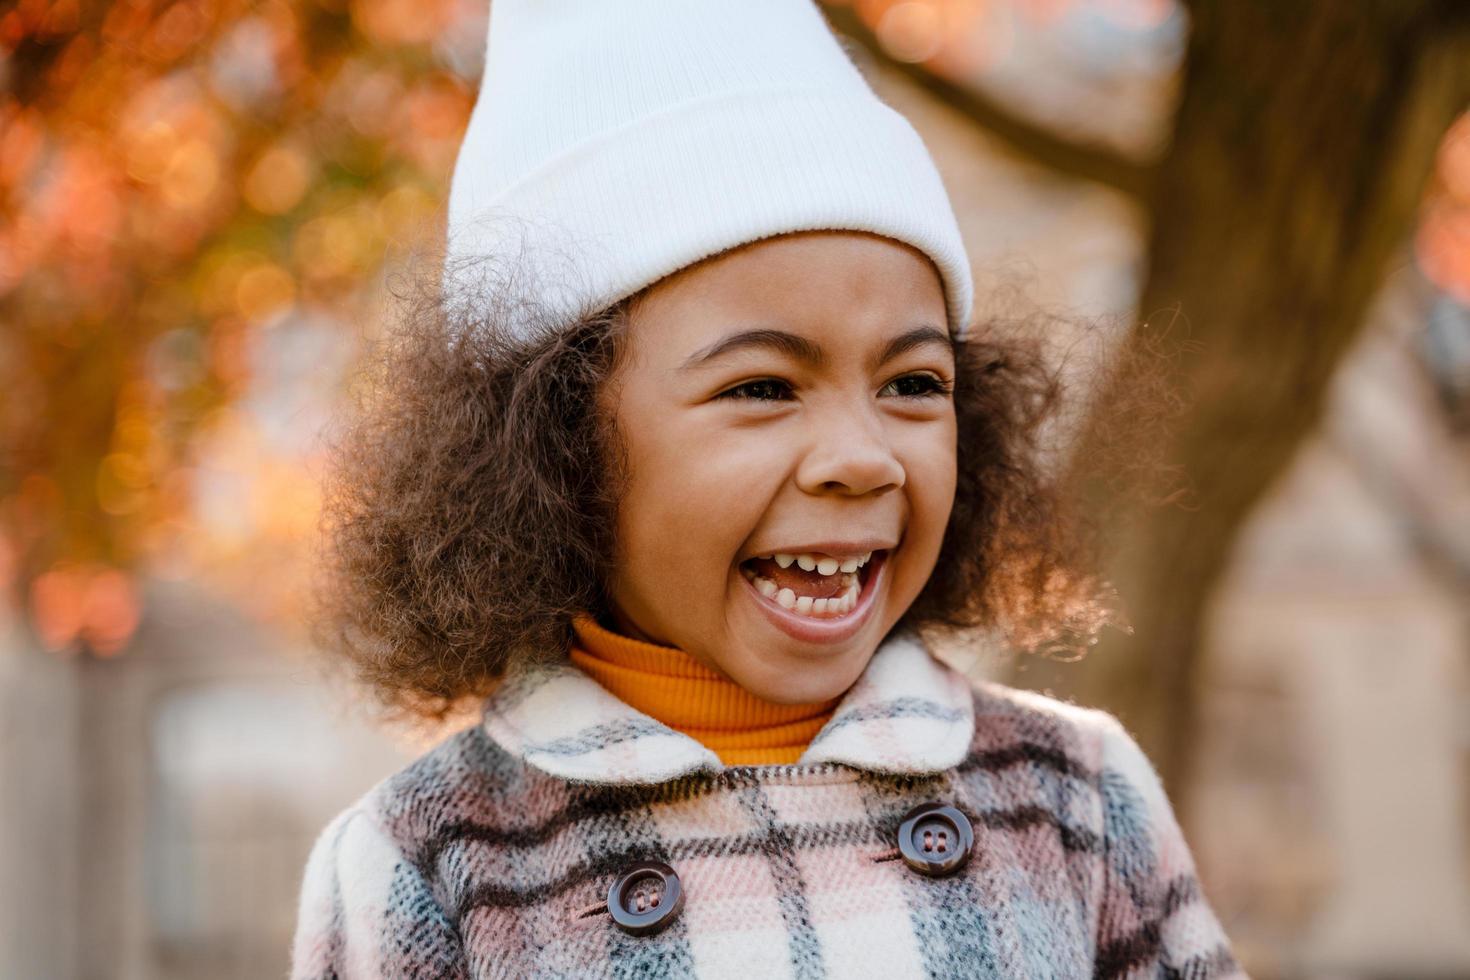 schwarzes lockiges Mädchen mit weißem Hut, das beim Gehen im Herbstpark lächelt foto